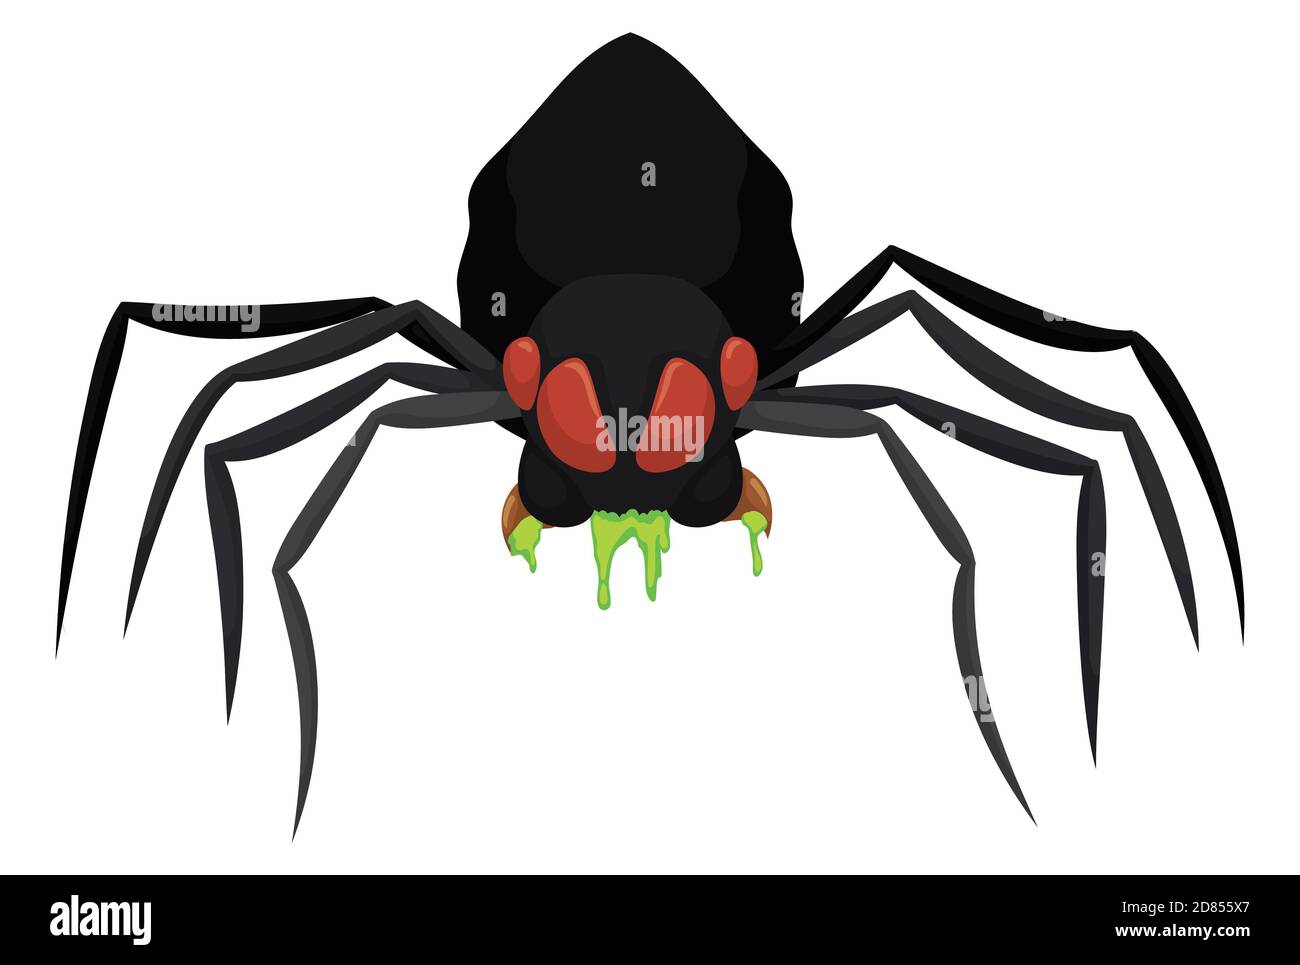 Araignée noire isolée avec une attitude féroce et en coulant un venin dangereux, sur fond blanc. Illustration de Vecteur